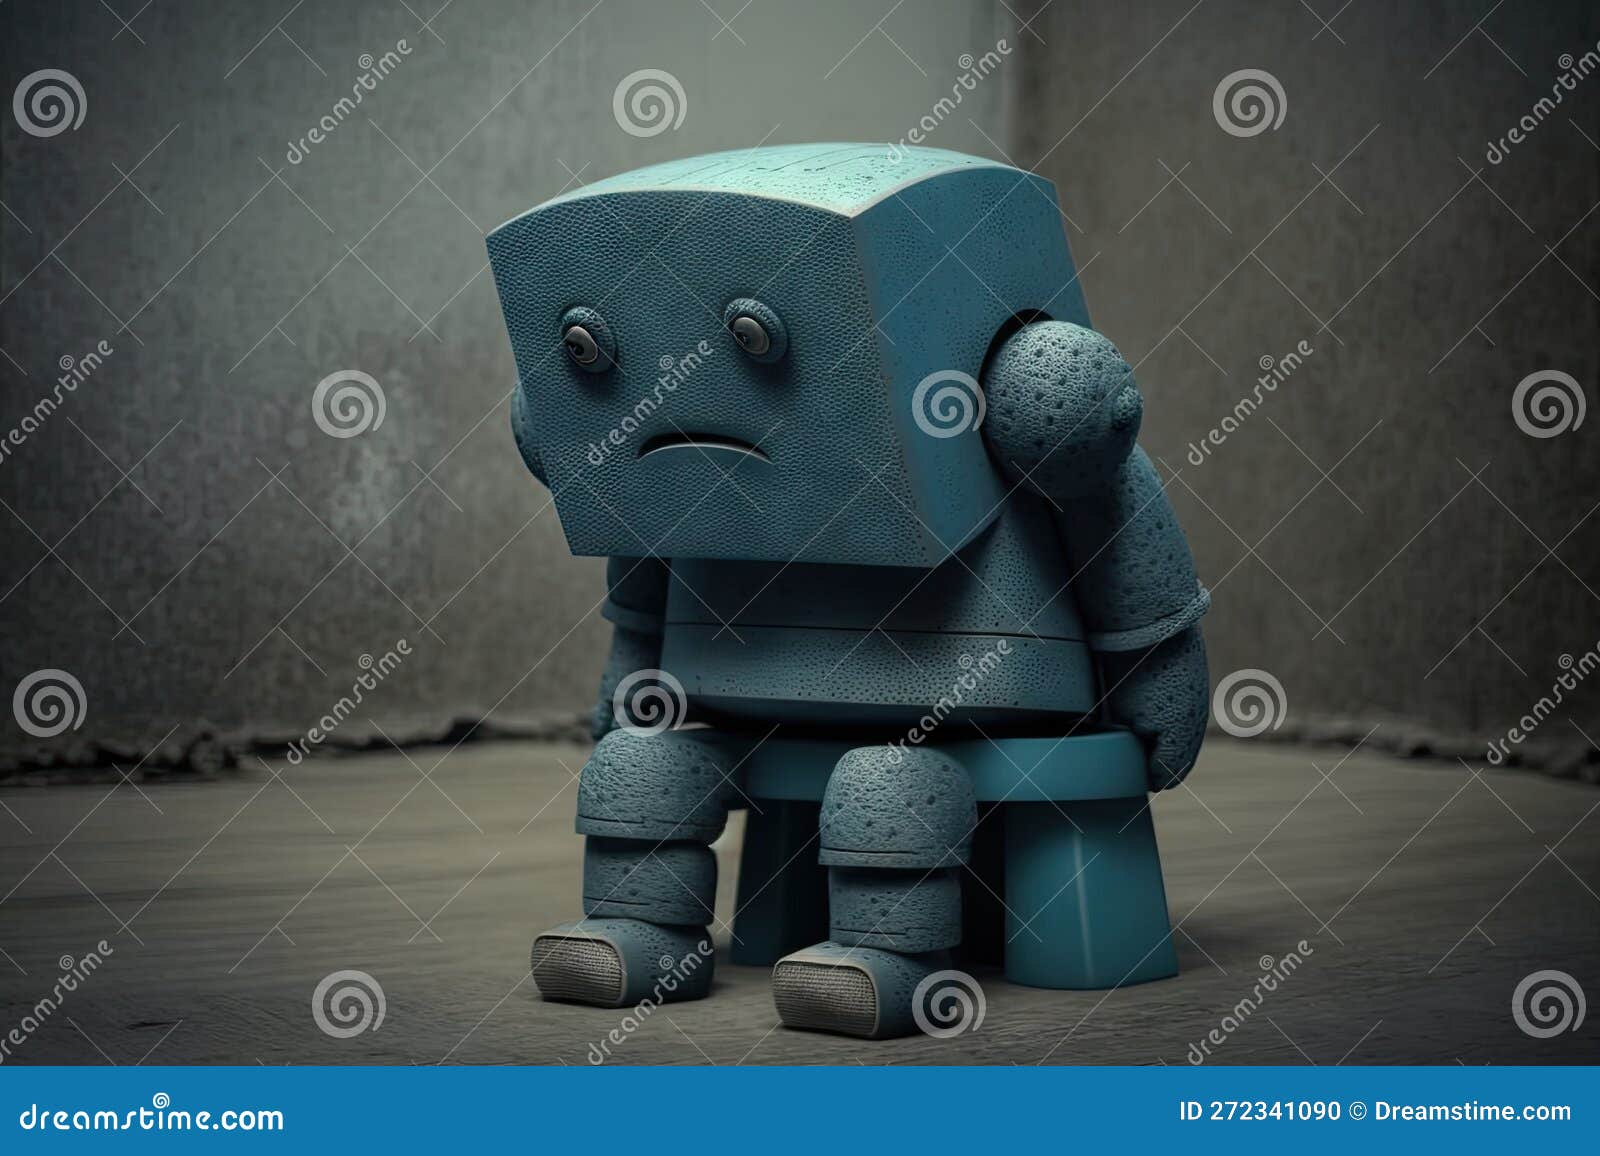 overliggende Frigøre Pogo stick spring Lonely Sad Robot Sitting on Stool in Gray Blue Tones Stock Illustration -  Illustration of robot, person: 272341090